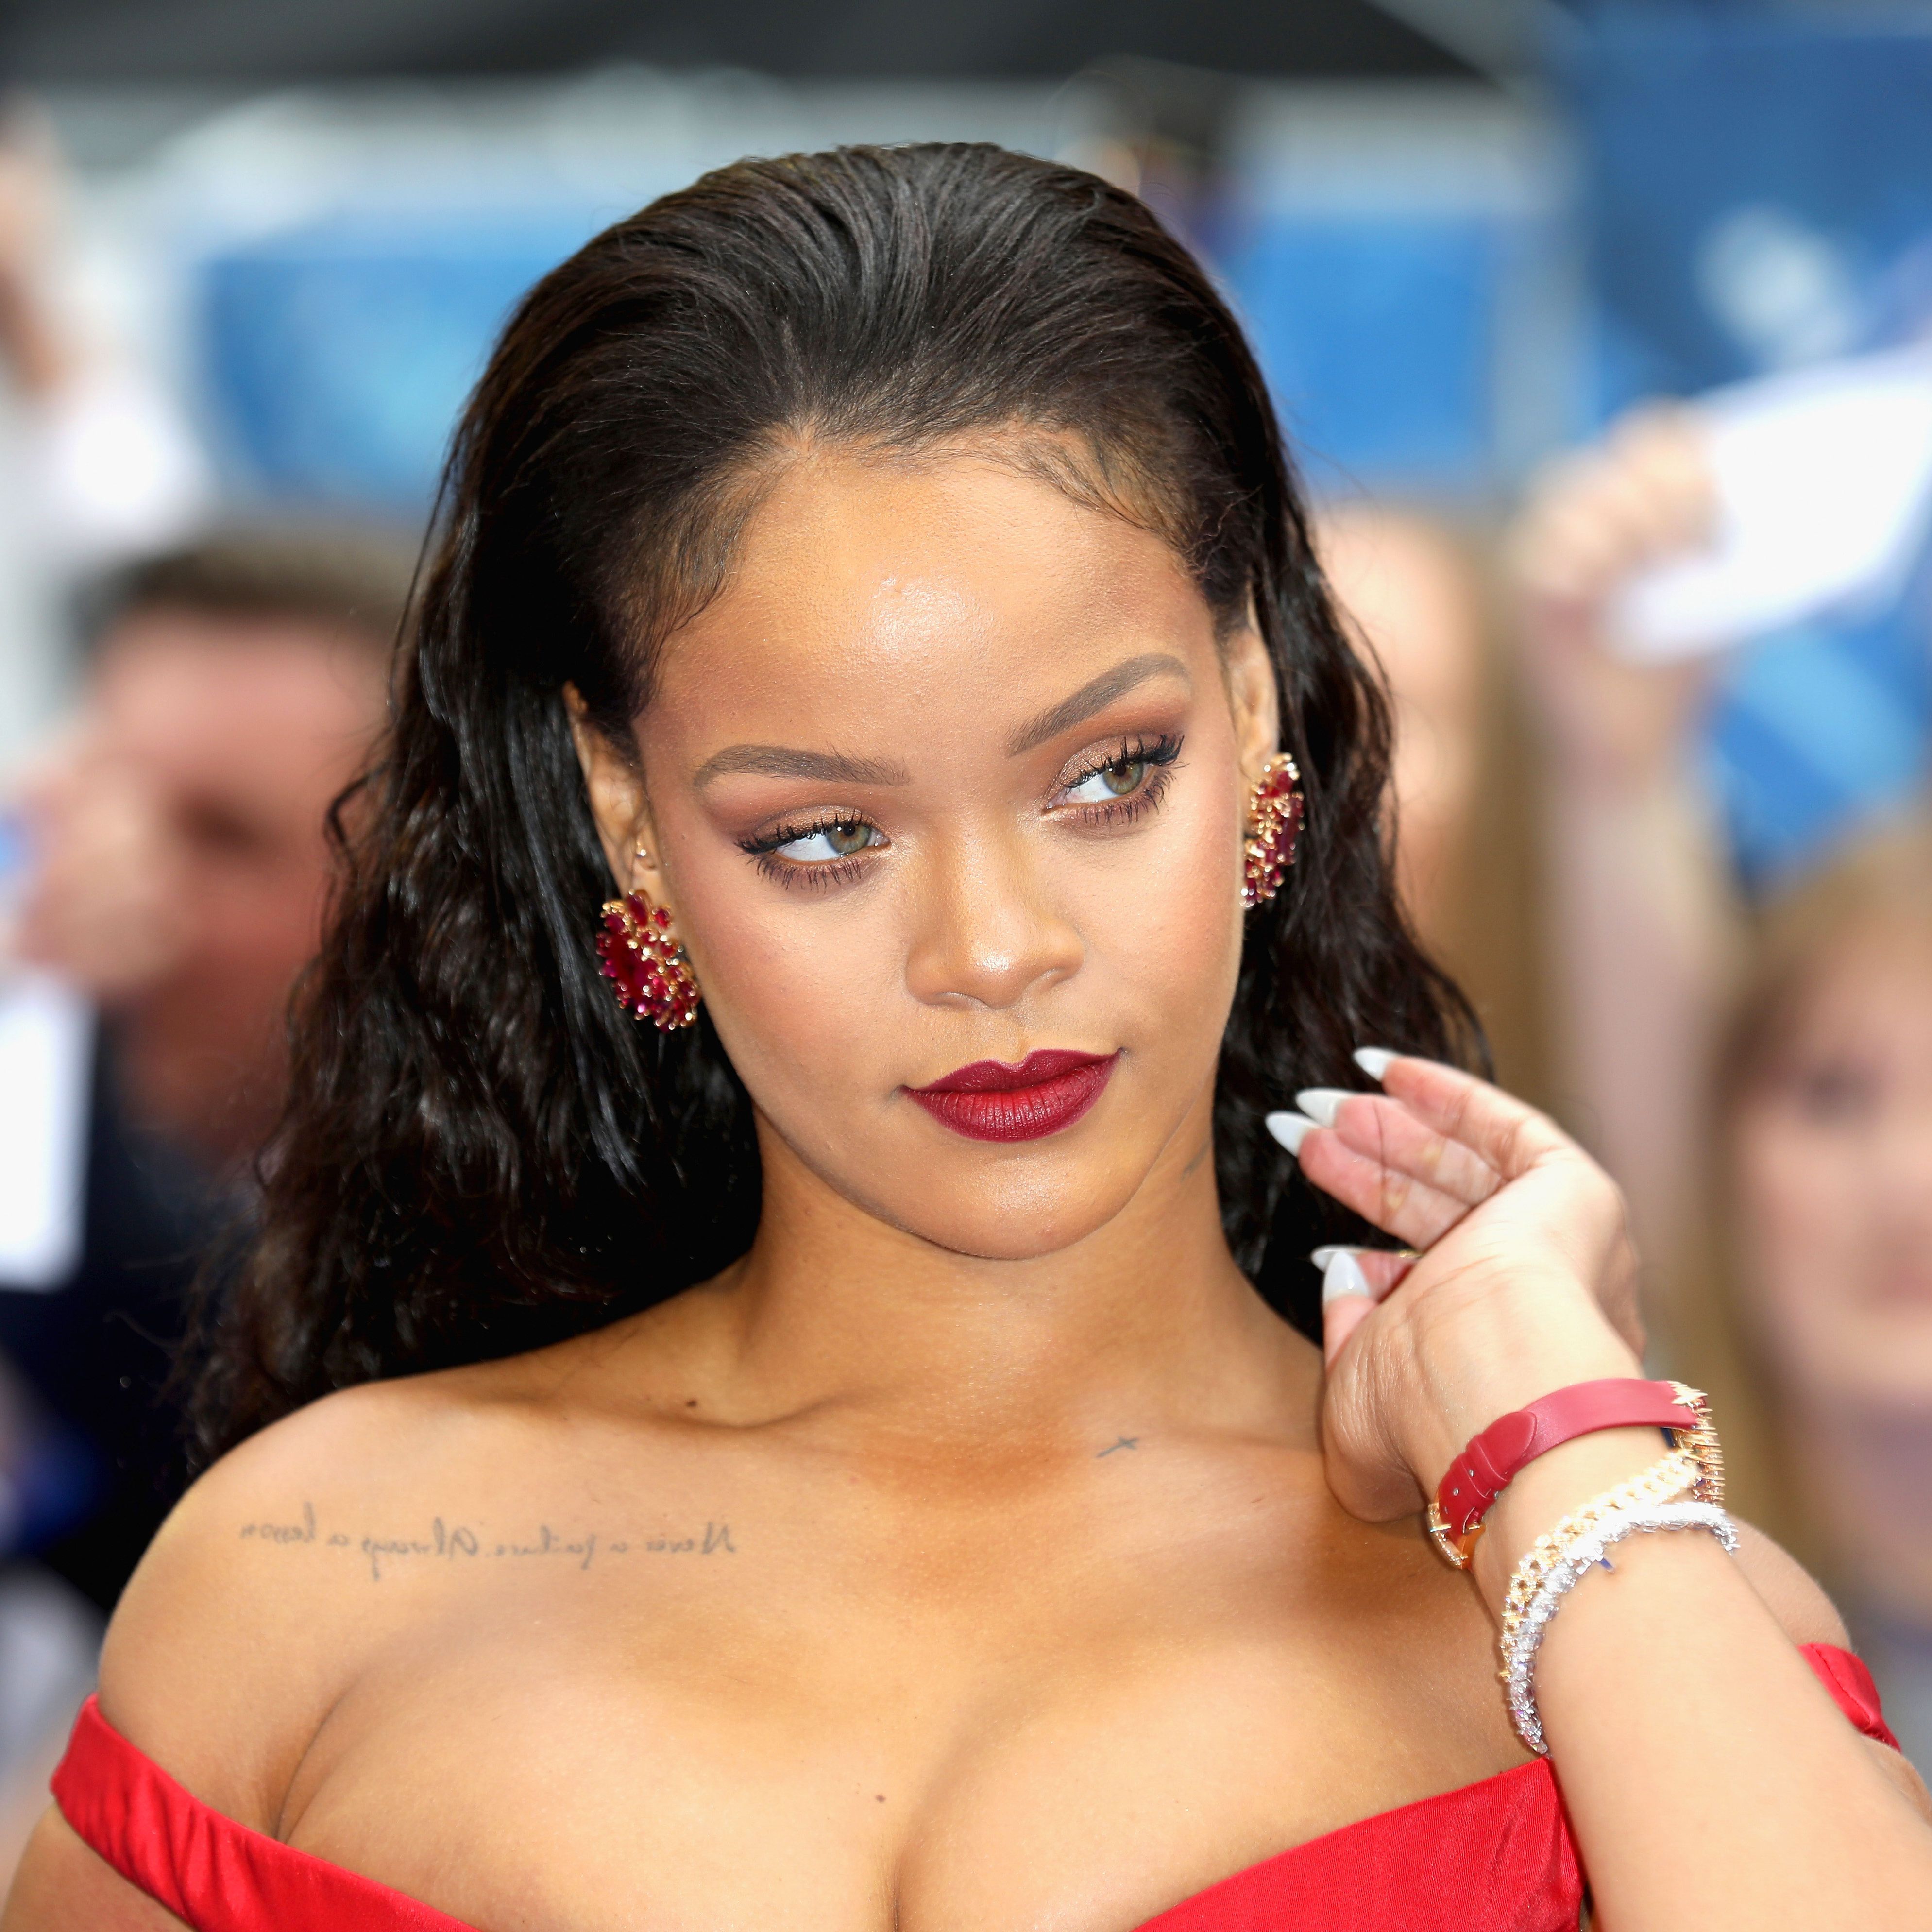 Star Tracks: Rihanna, A$AP Rocky, Lizzo [PHOTOS]